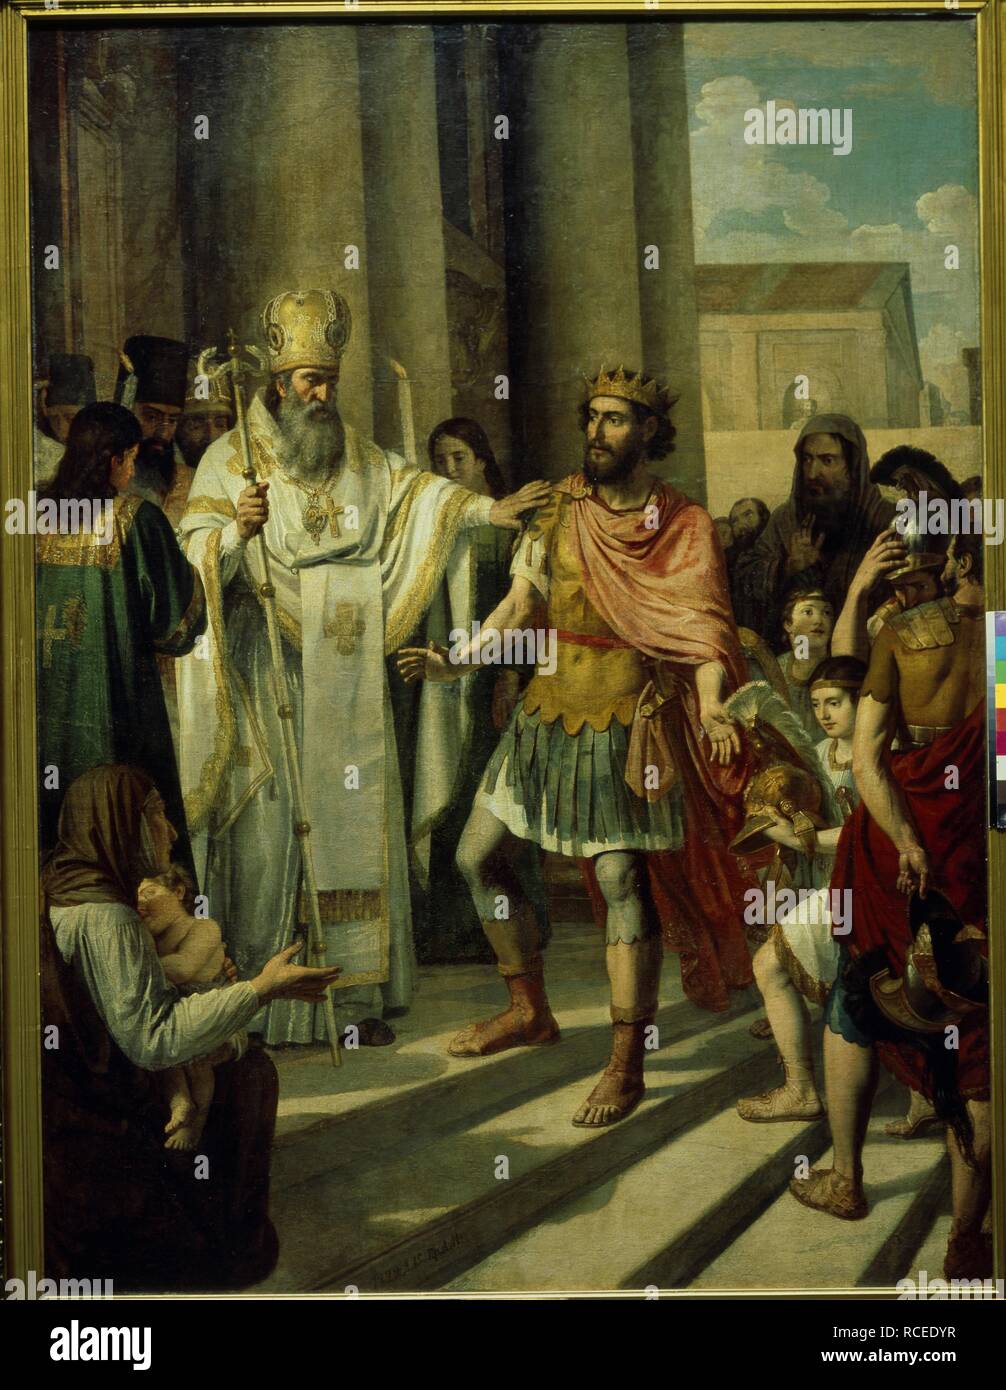 Le baptême de saint Vladimir le Grand en 987. Musée : la Galerie nationale Tretiakov (Moscou). Auteur : Ivanov, Andreï Ivanovitch. Banque D'Images